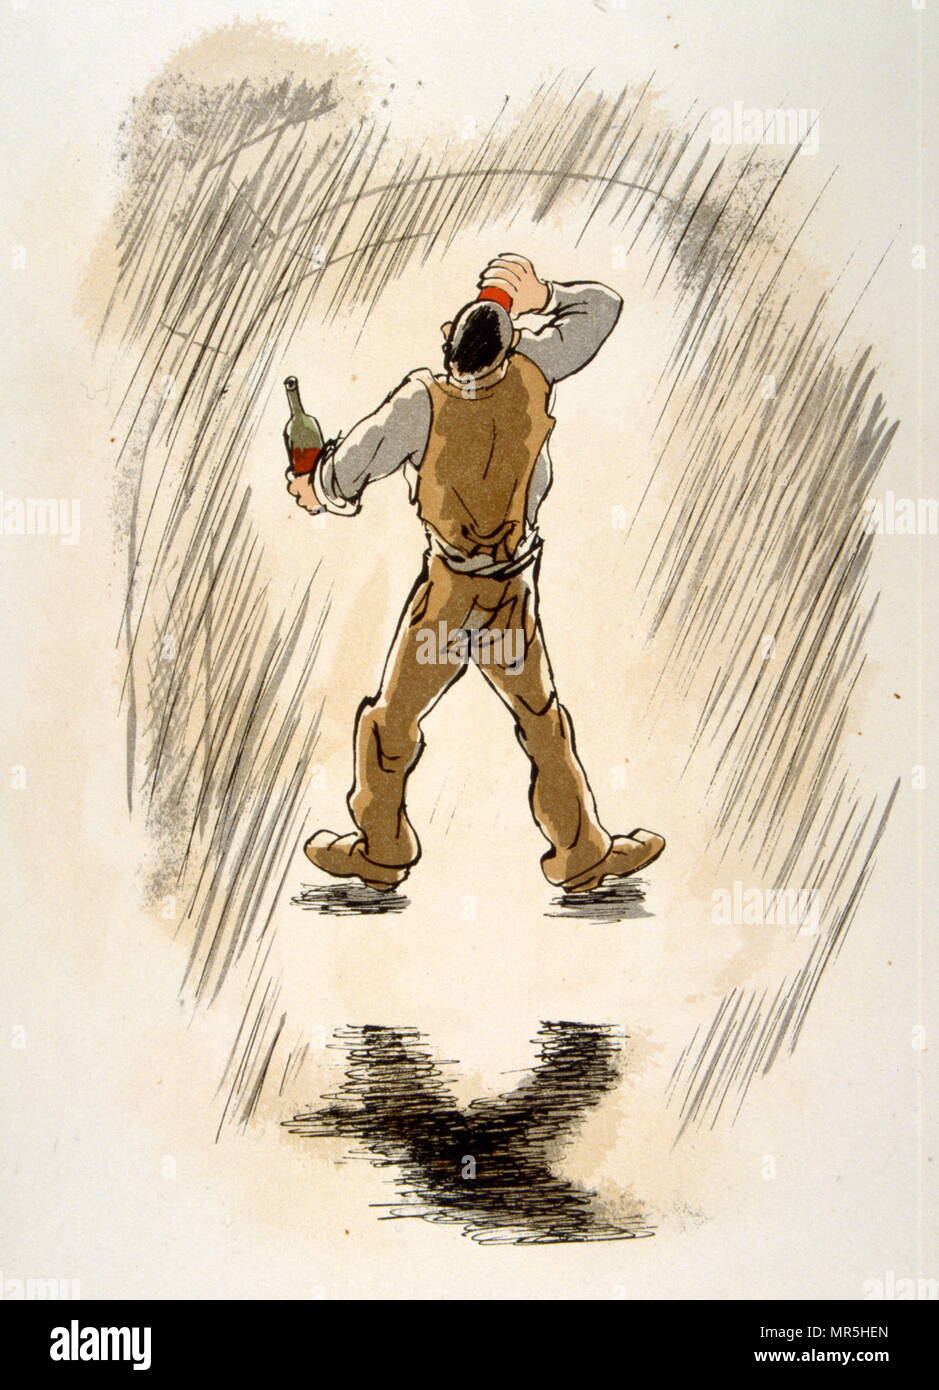 Vin humour Illustration 1946, Illustration par Julien Pavil, (1895-1952), illustrateur français du 20e siècle, humoriste et artiste de l'affiche. Il a illustré plusieurs livres entre 1929 et 1945. Banque D'Images